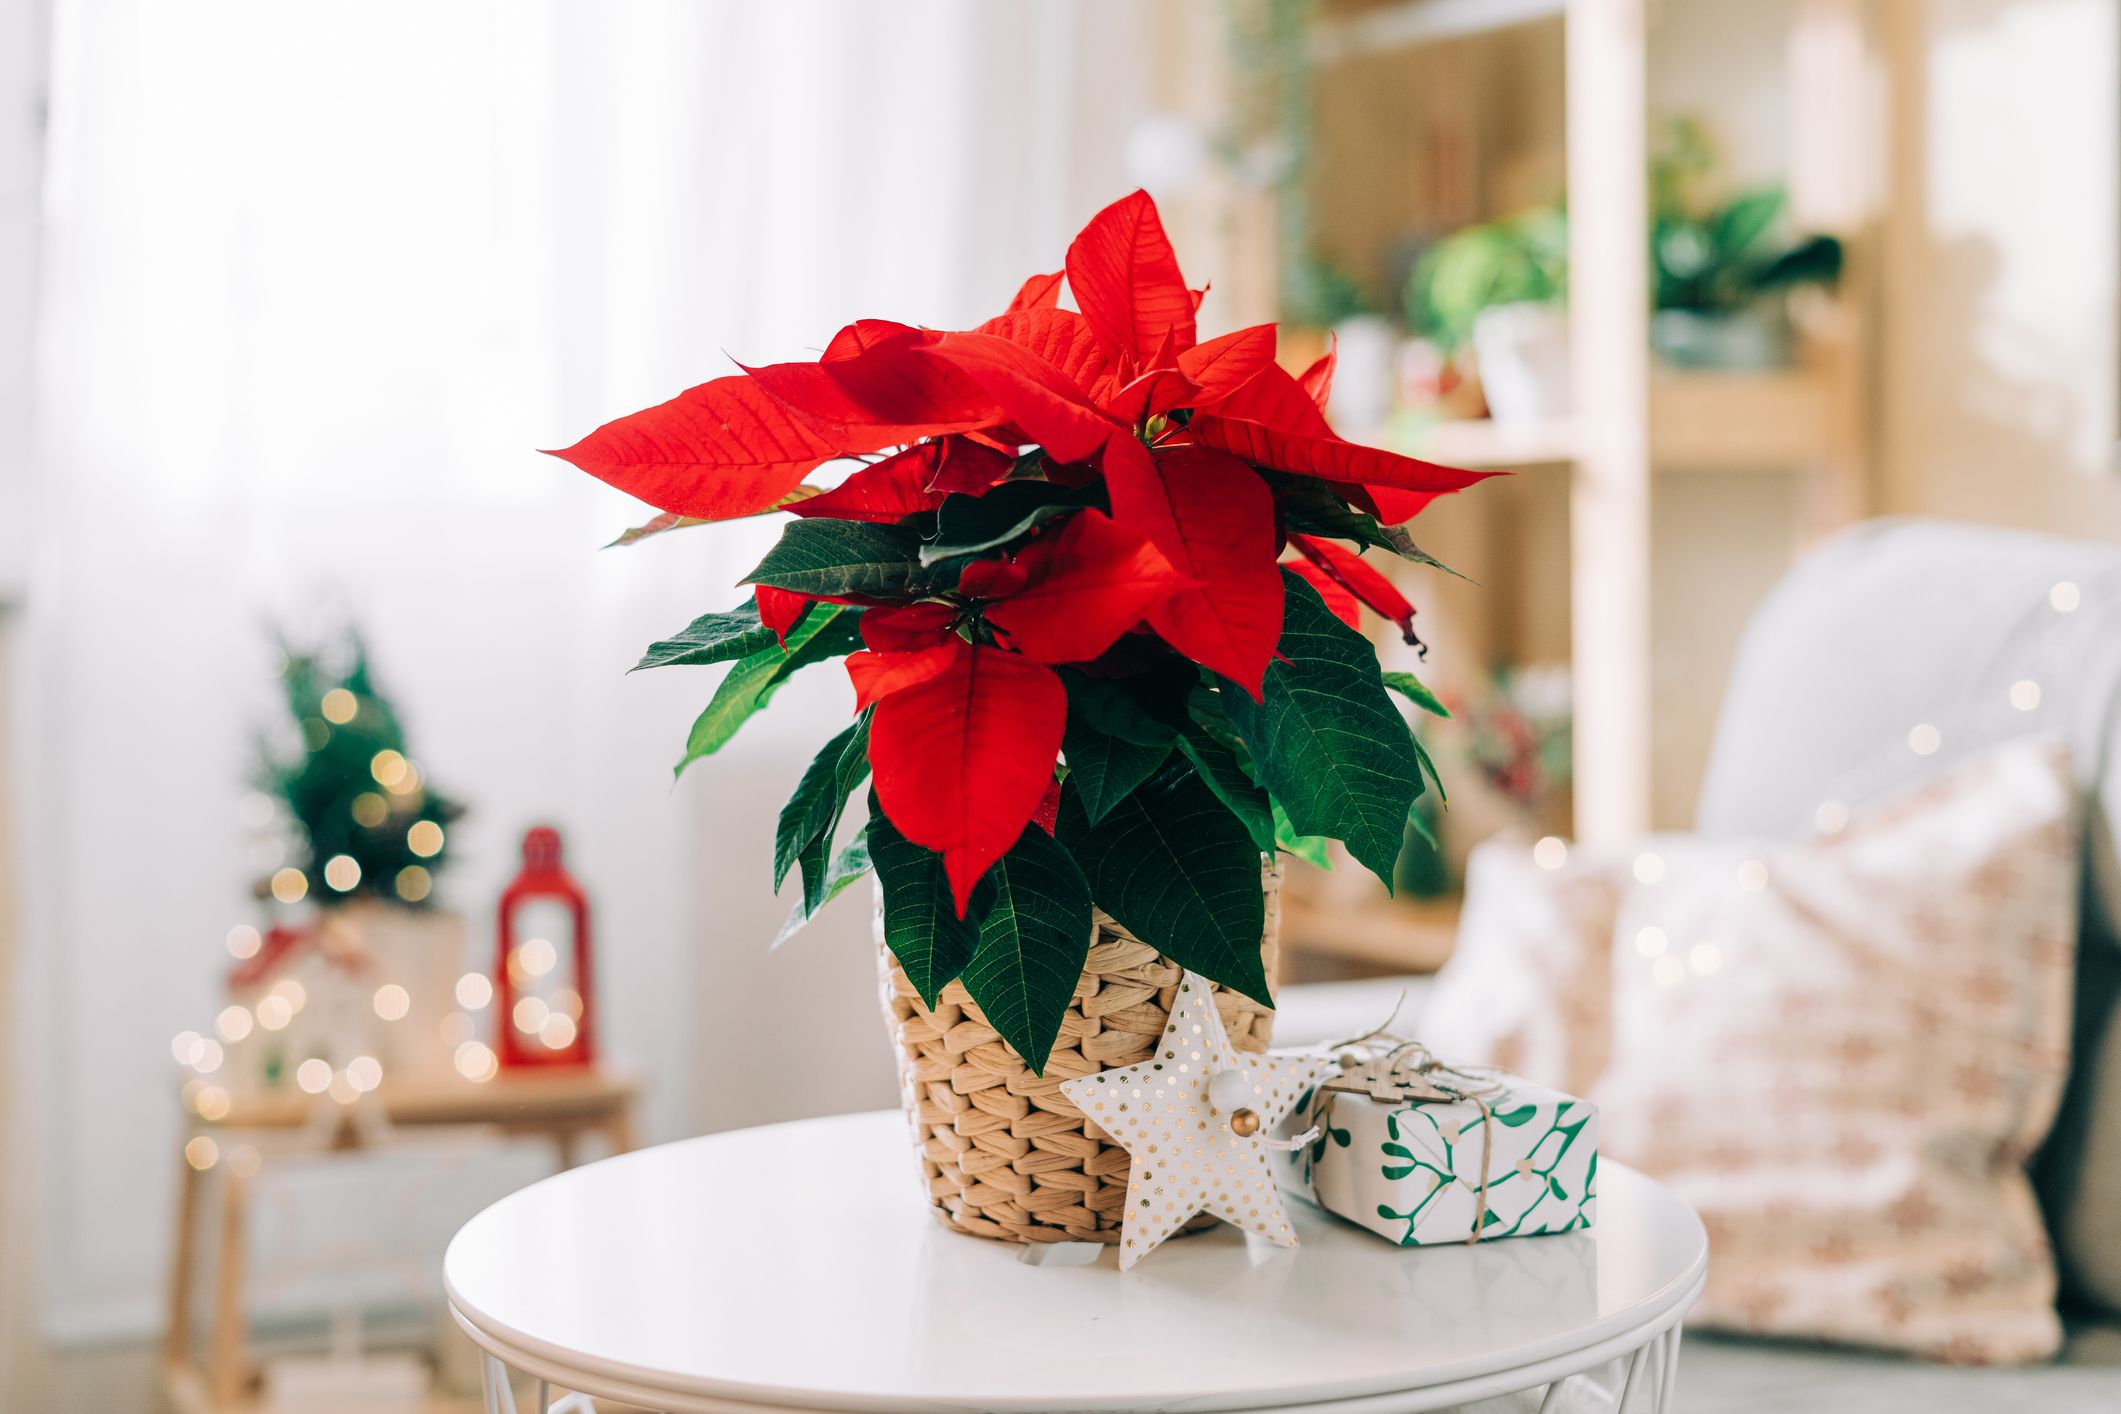 Red & White Poinsettia Christmas Mix FORWARD-FACING Vase –